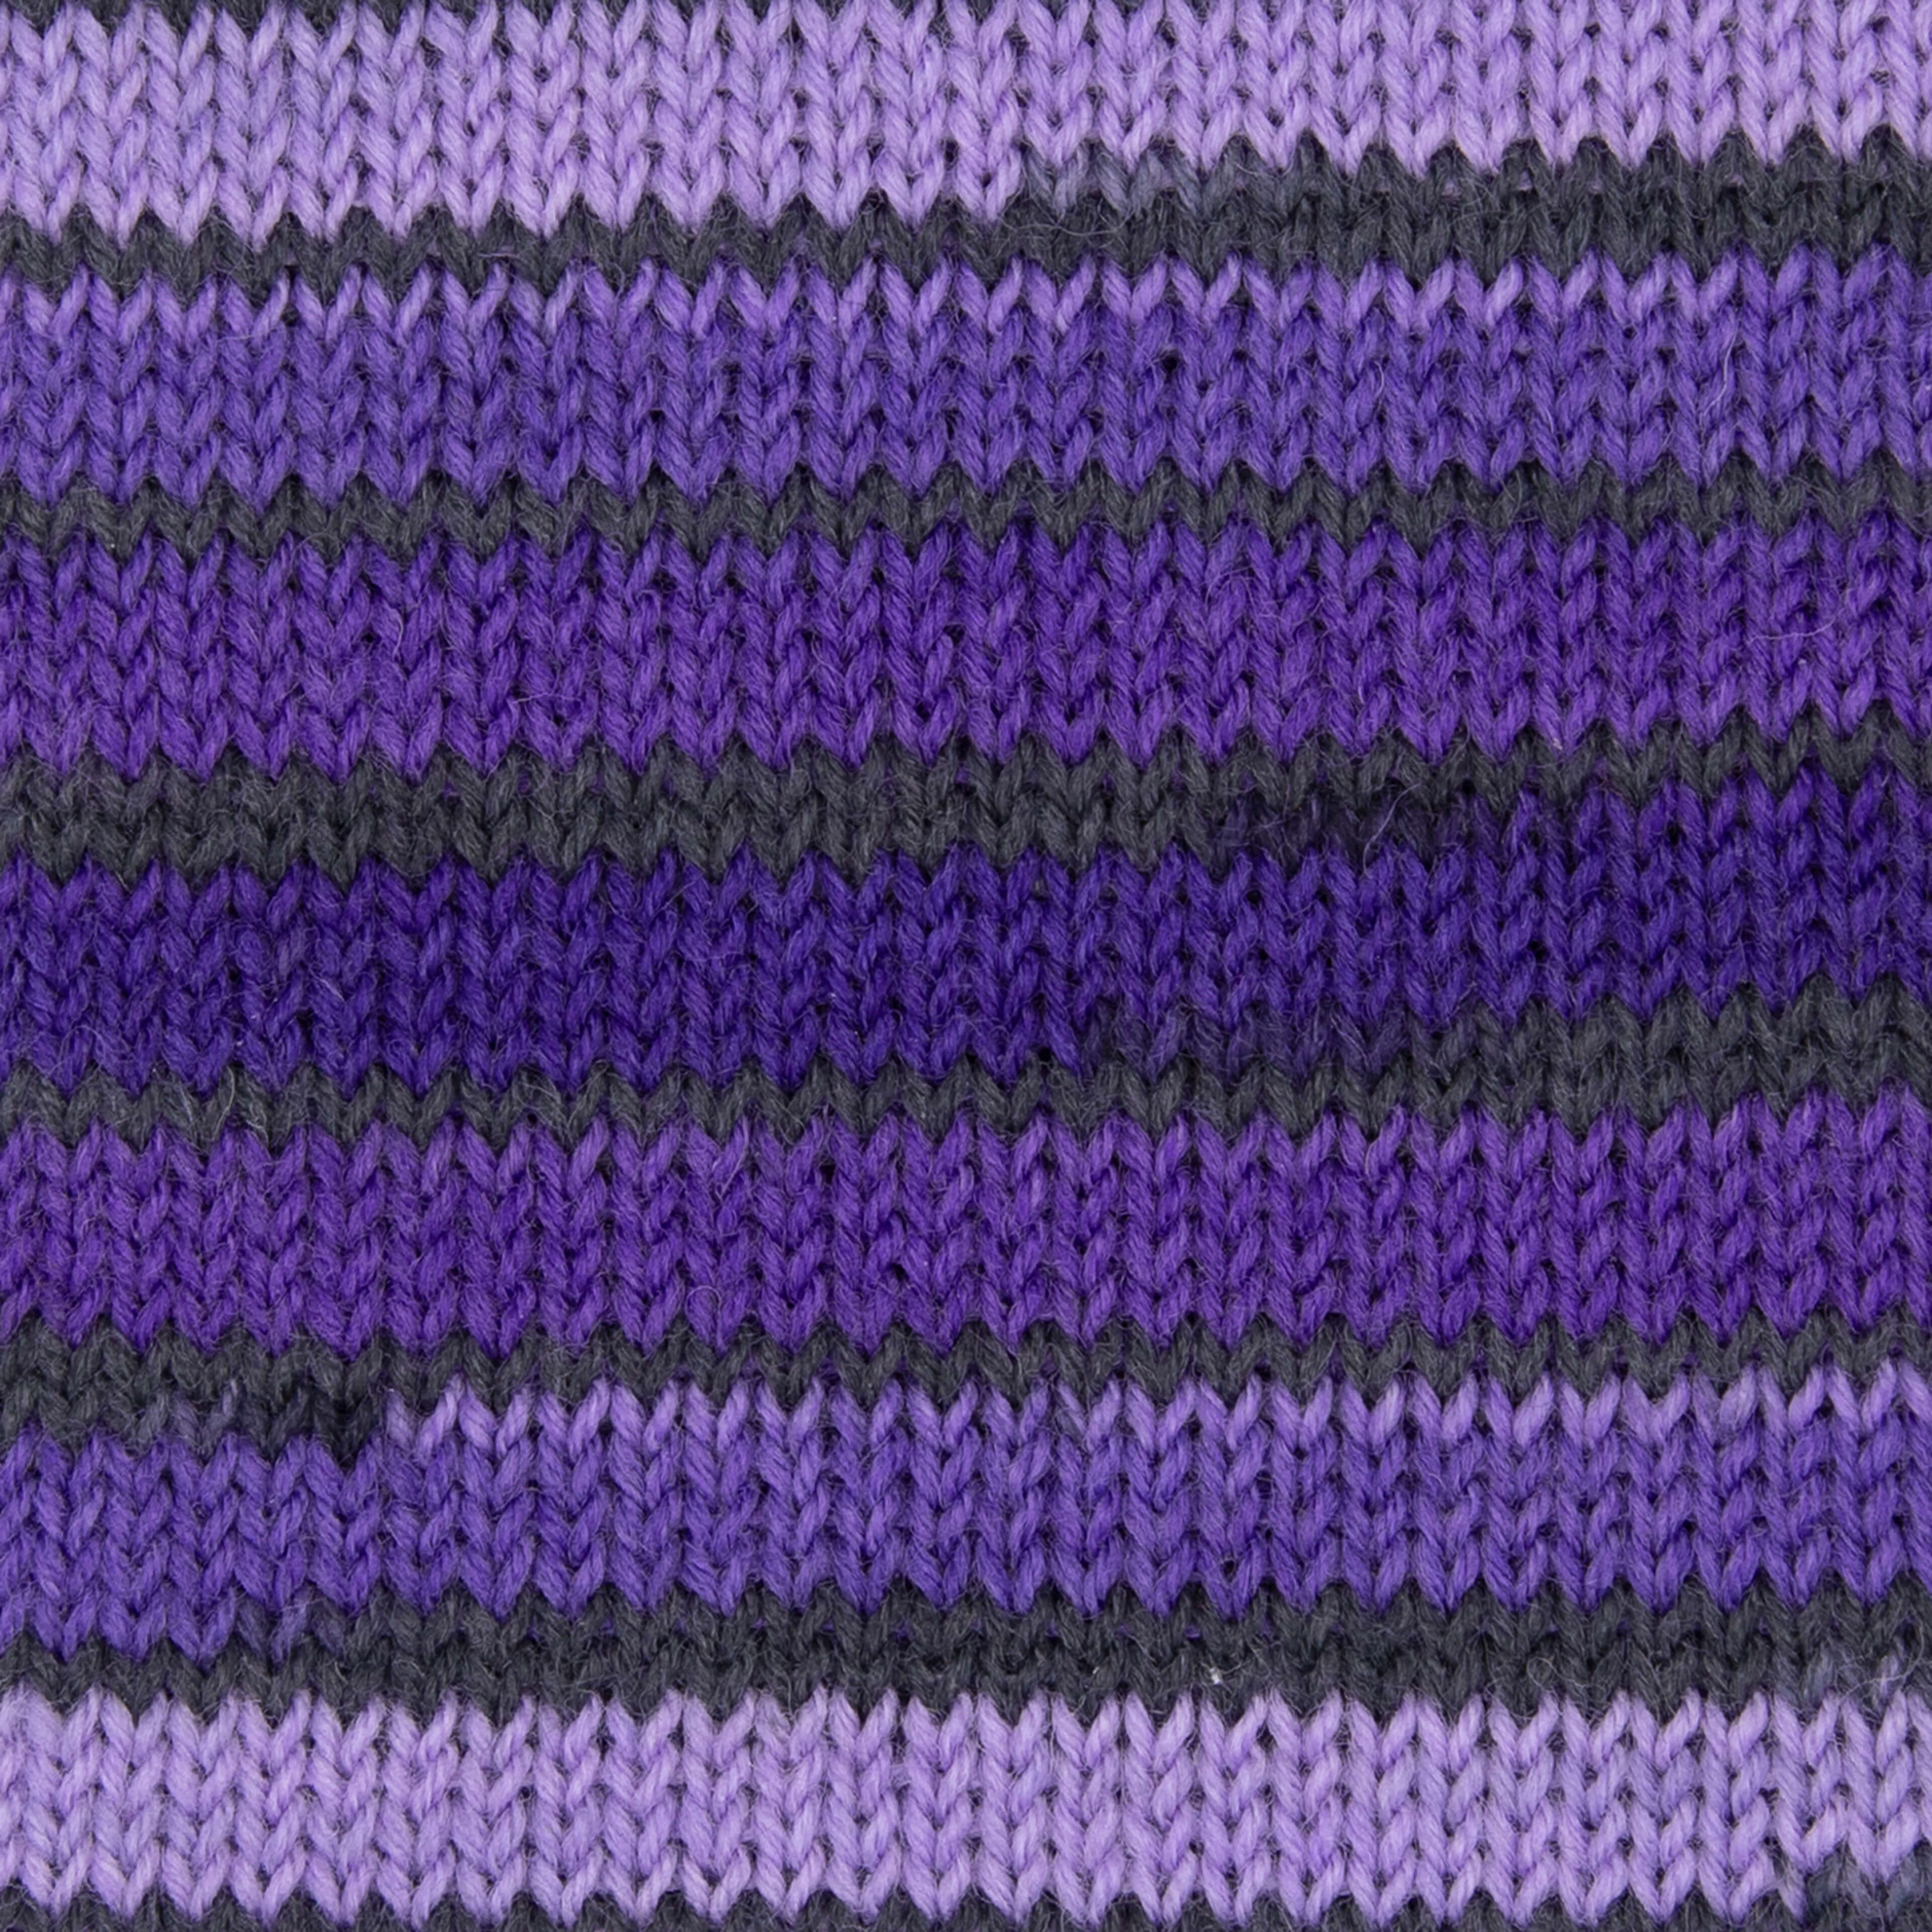 violett-indigo-anthrazit